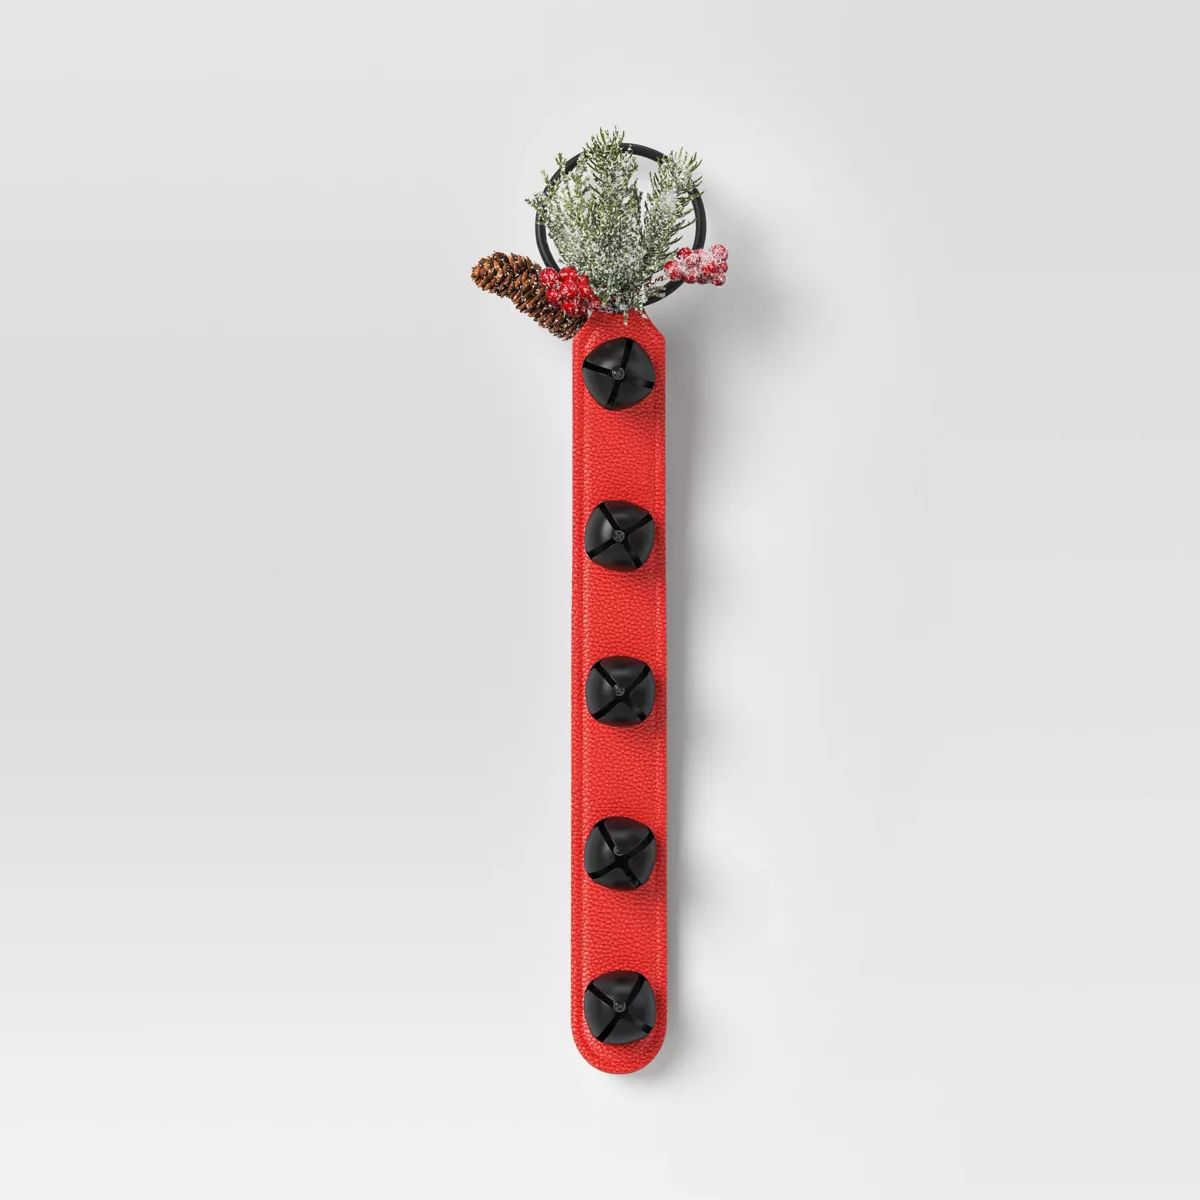 19" Christmas Bells with Greenery Door Décor Red - Wondershop™ | Target